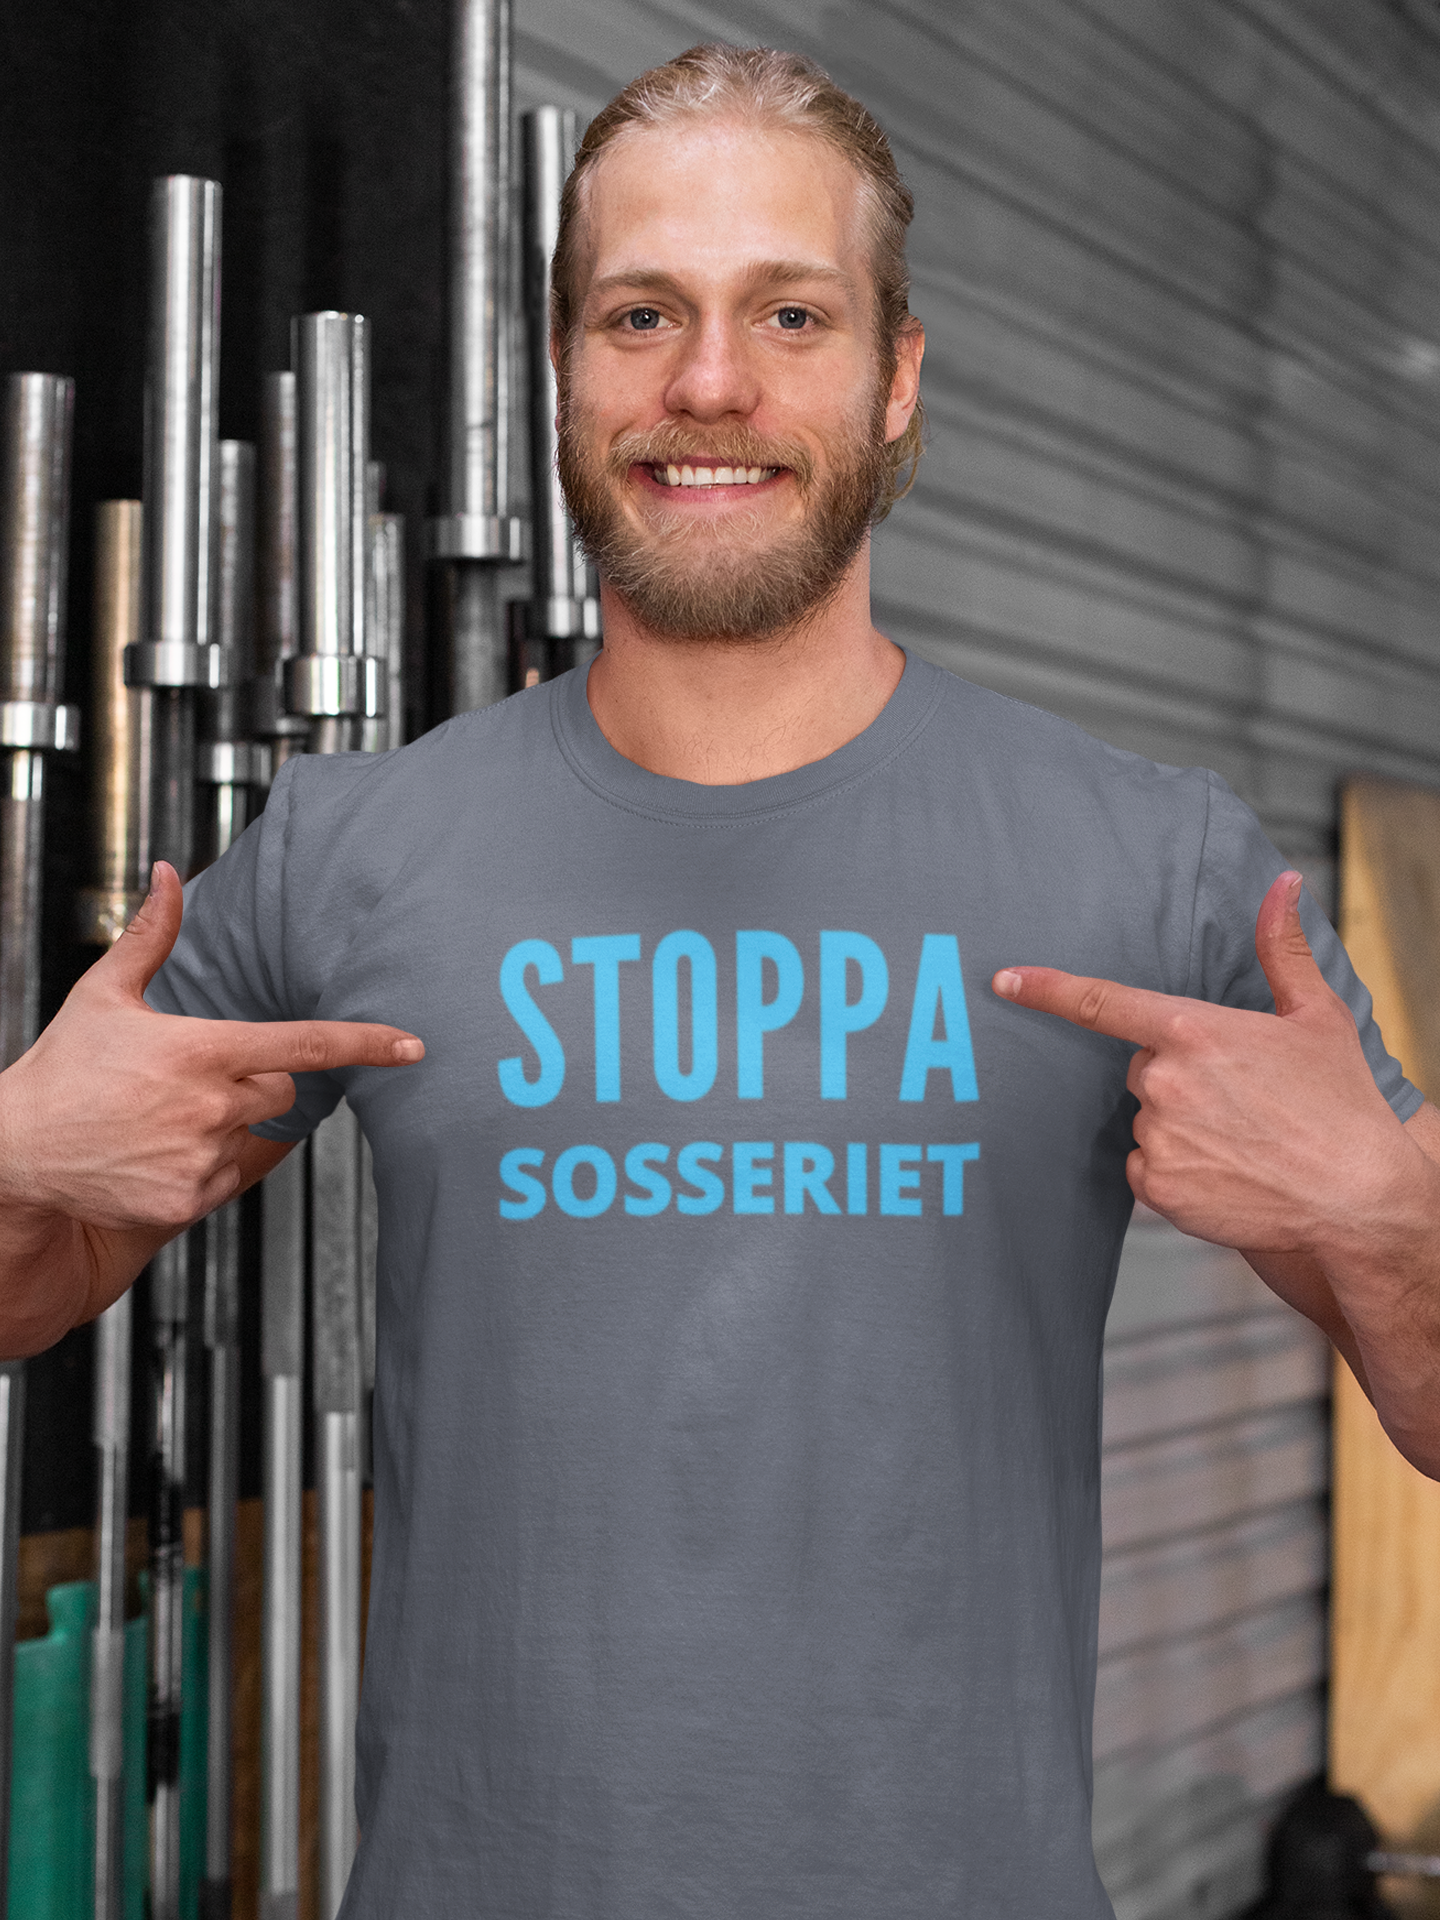 Stoppa Sosseriet T-Shirt, Tshirt Herr Stoppa Sosseriet, Anti Socialdemokrat Tröja, Tshirt Politik